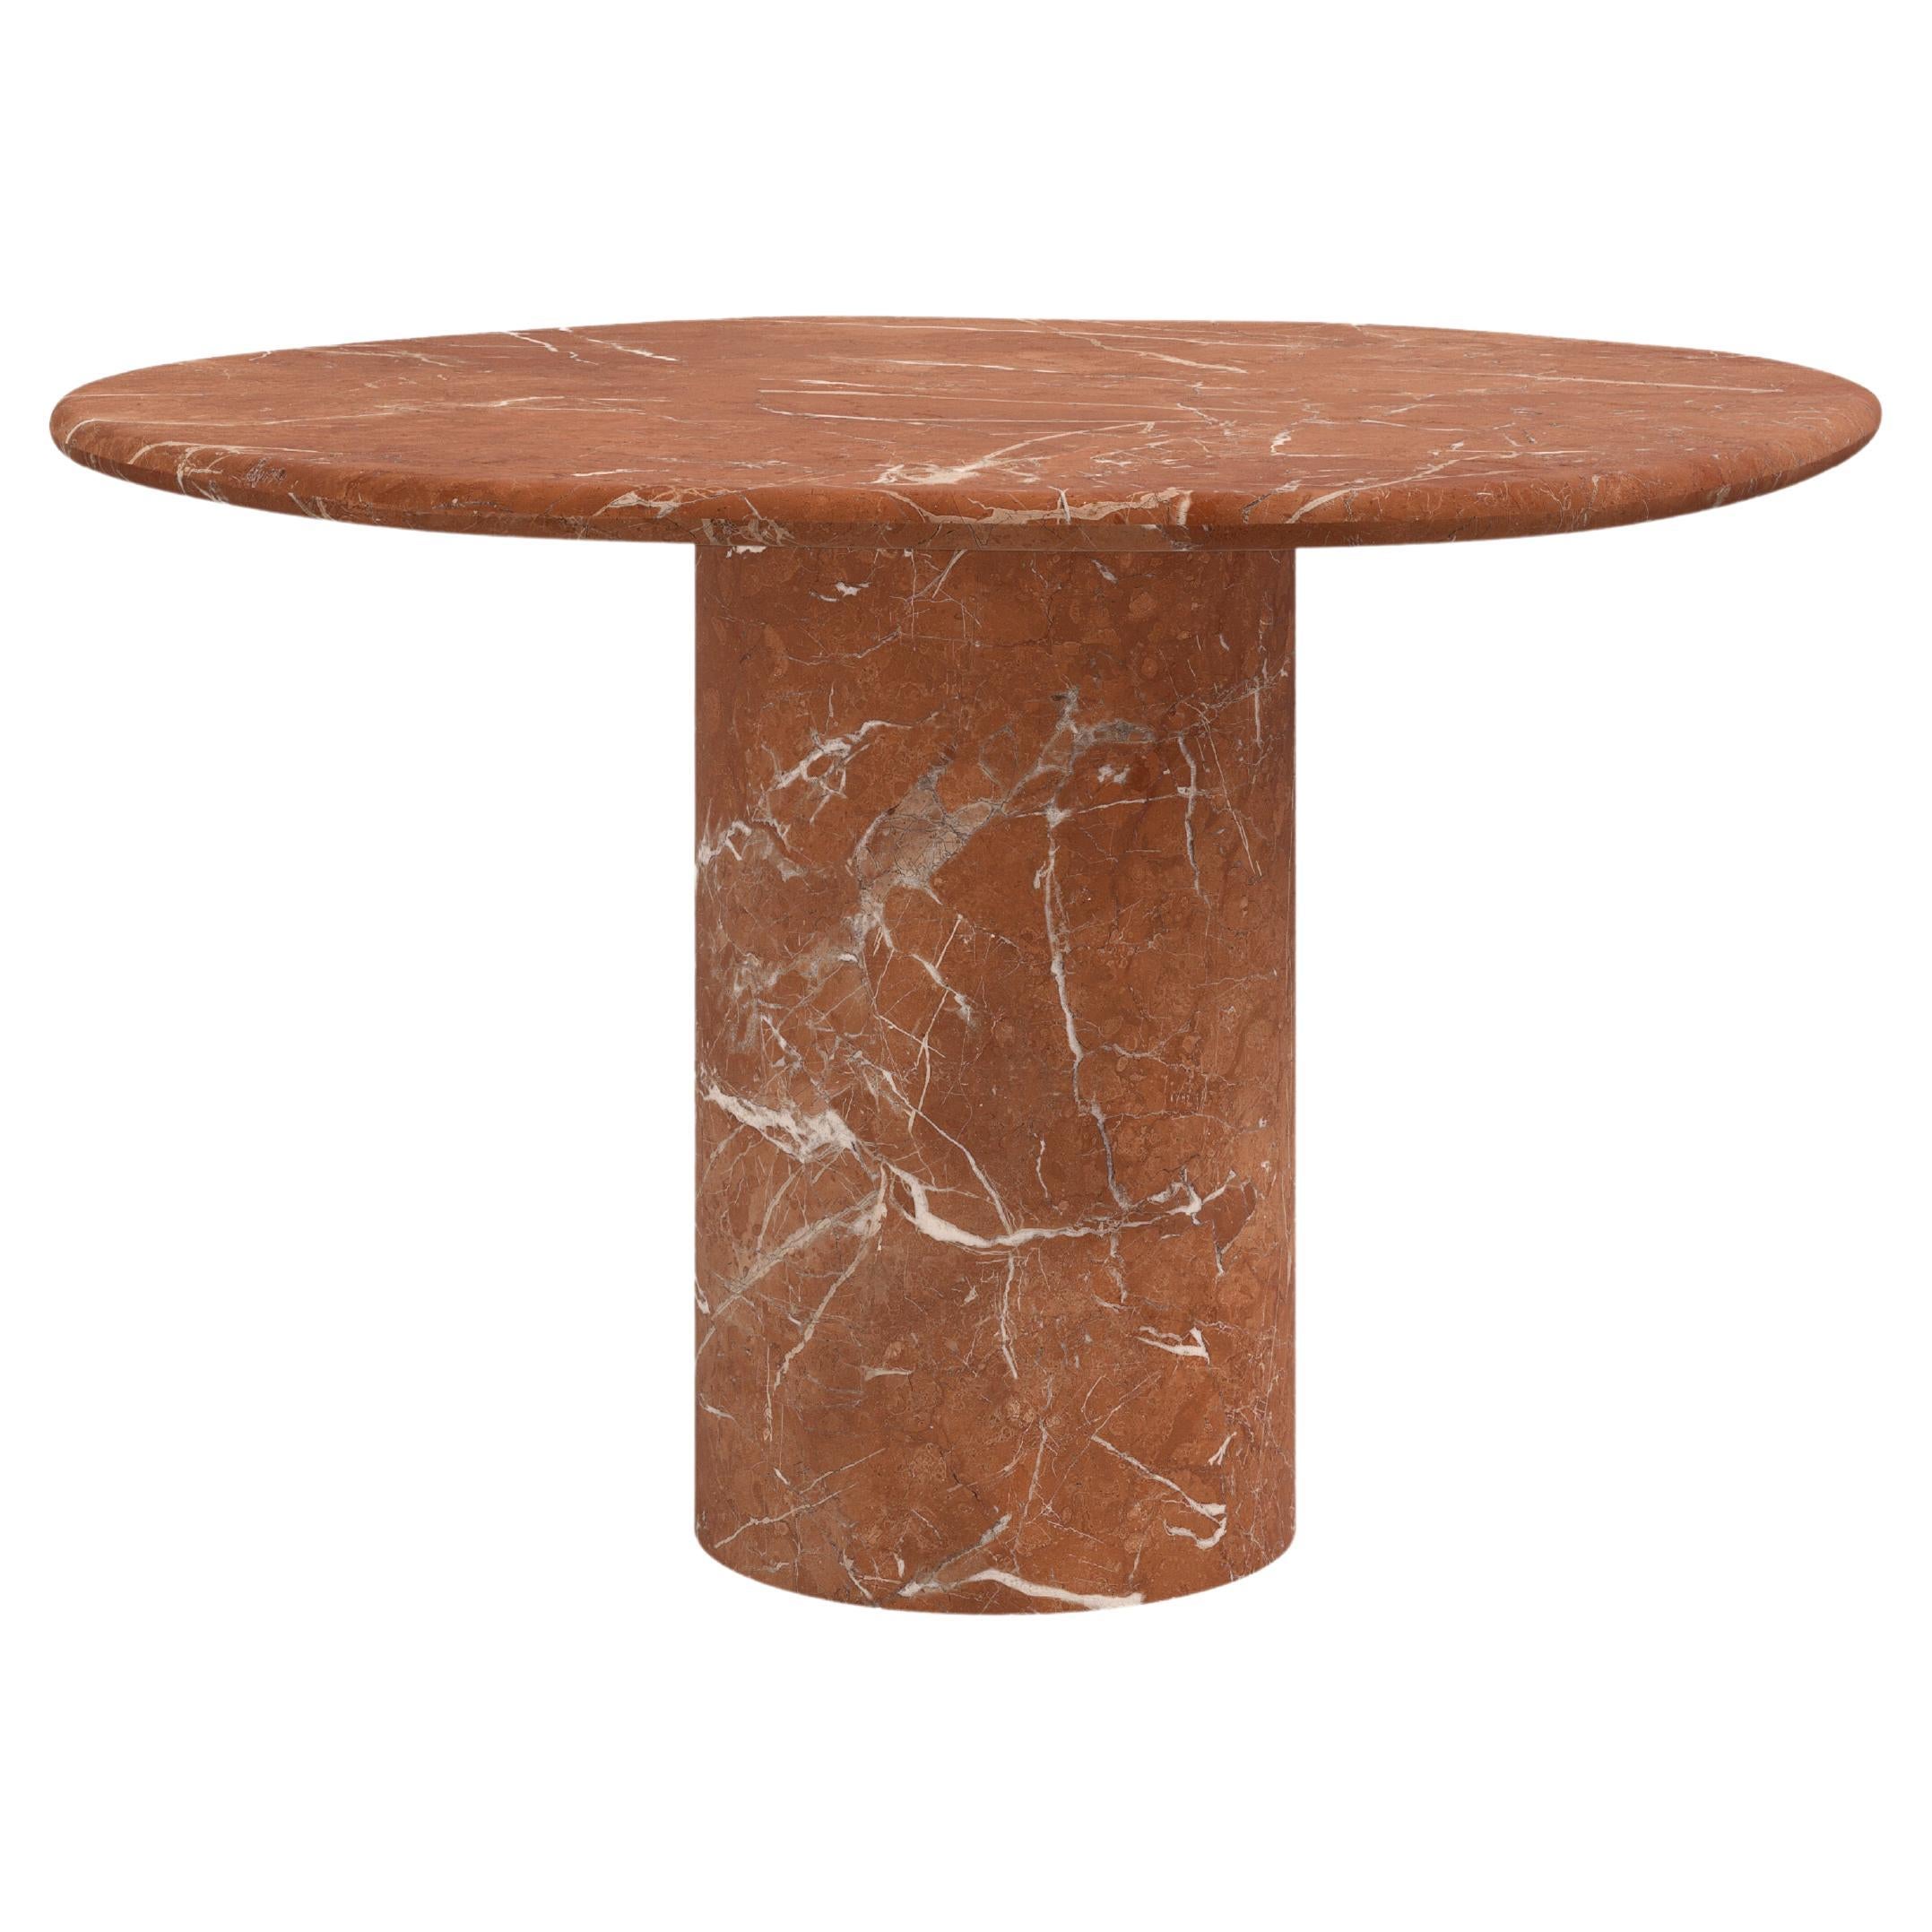 FORM(LA) Lago Round Dining Table 36”L x 36”W x 30”H Rojo Alicante Marble For Sale